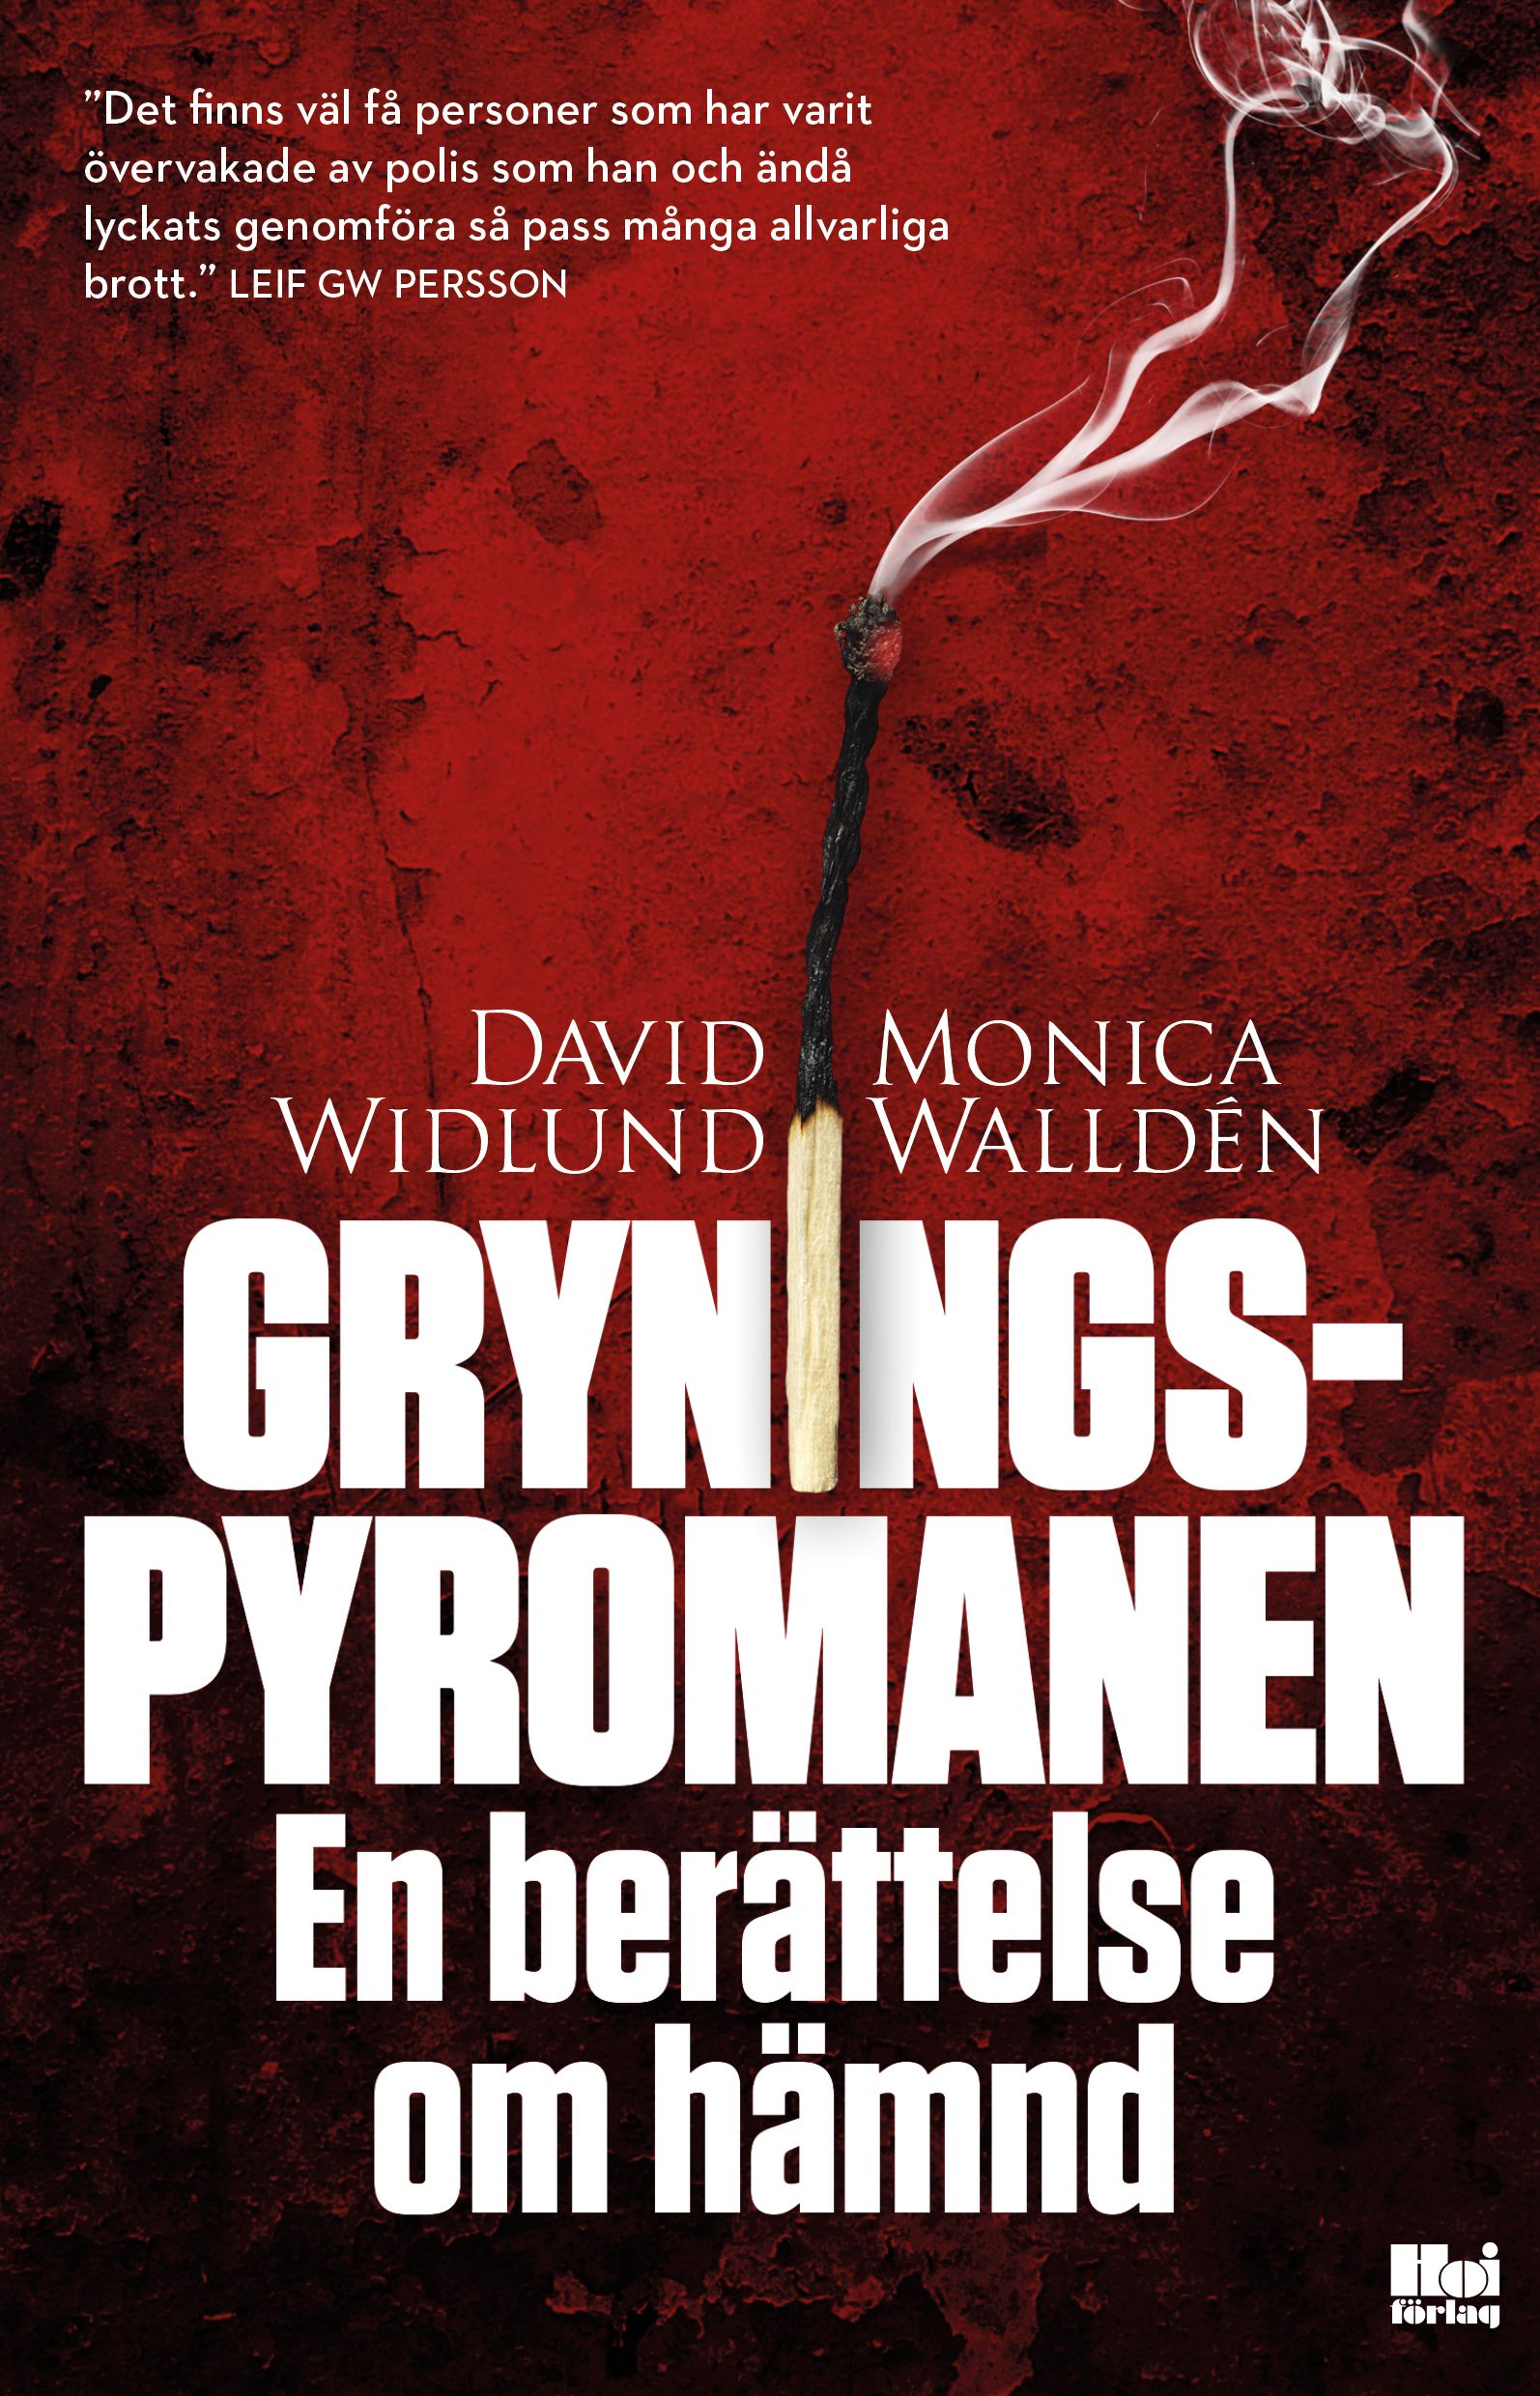 Gryningspyromanen: En berättelse om hämnd, e-bok av Monica Walldén, David Widlund